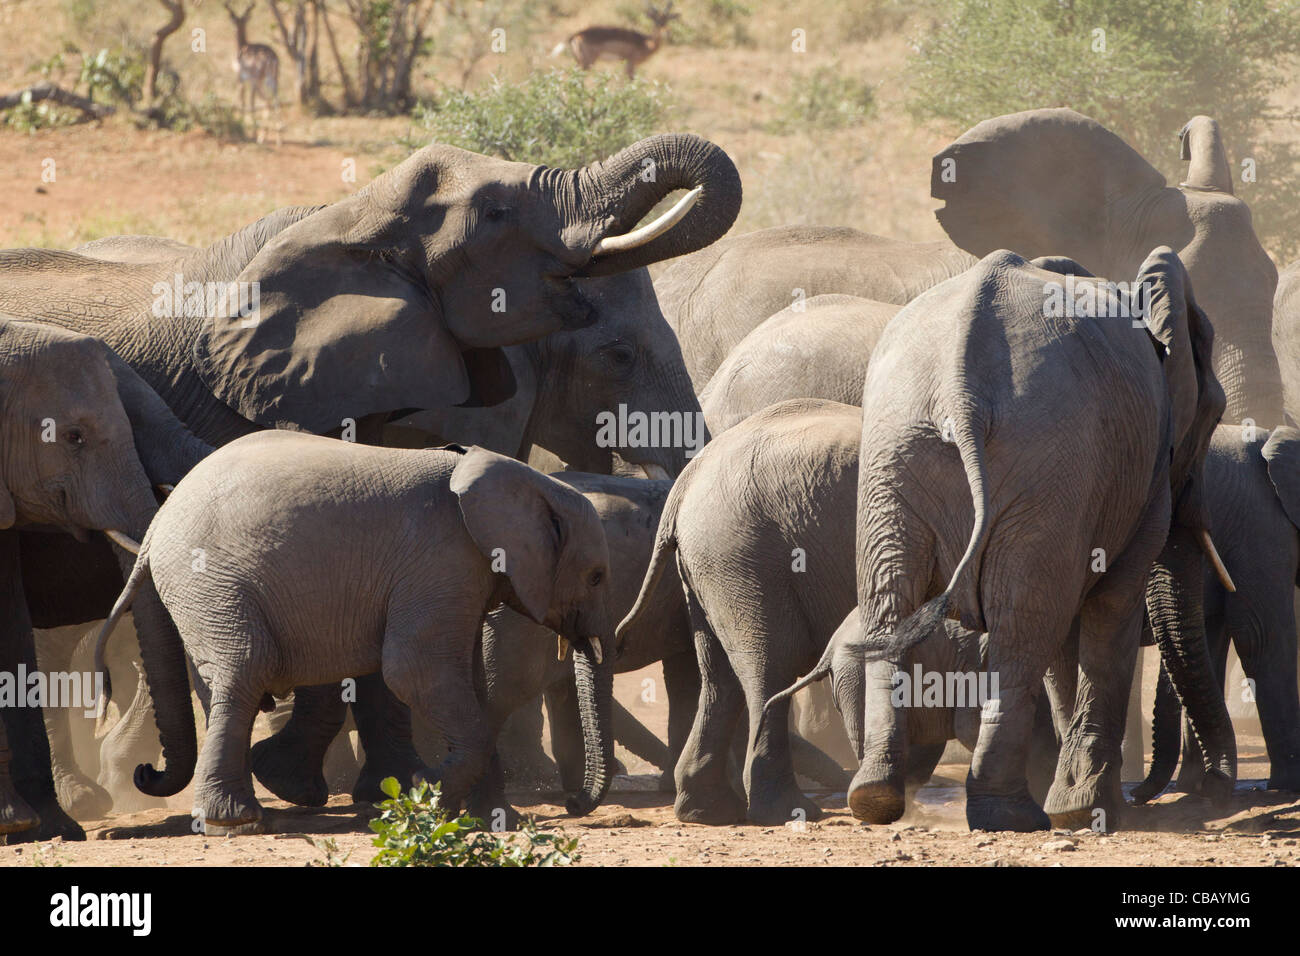 Familia de elefantes africanos jugando en el polvo (Loxodonta africana) Foto de stock